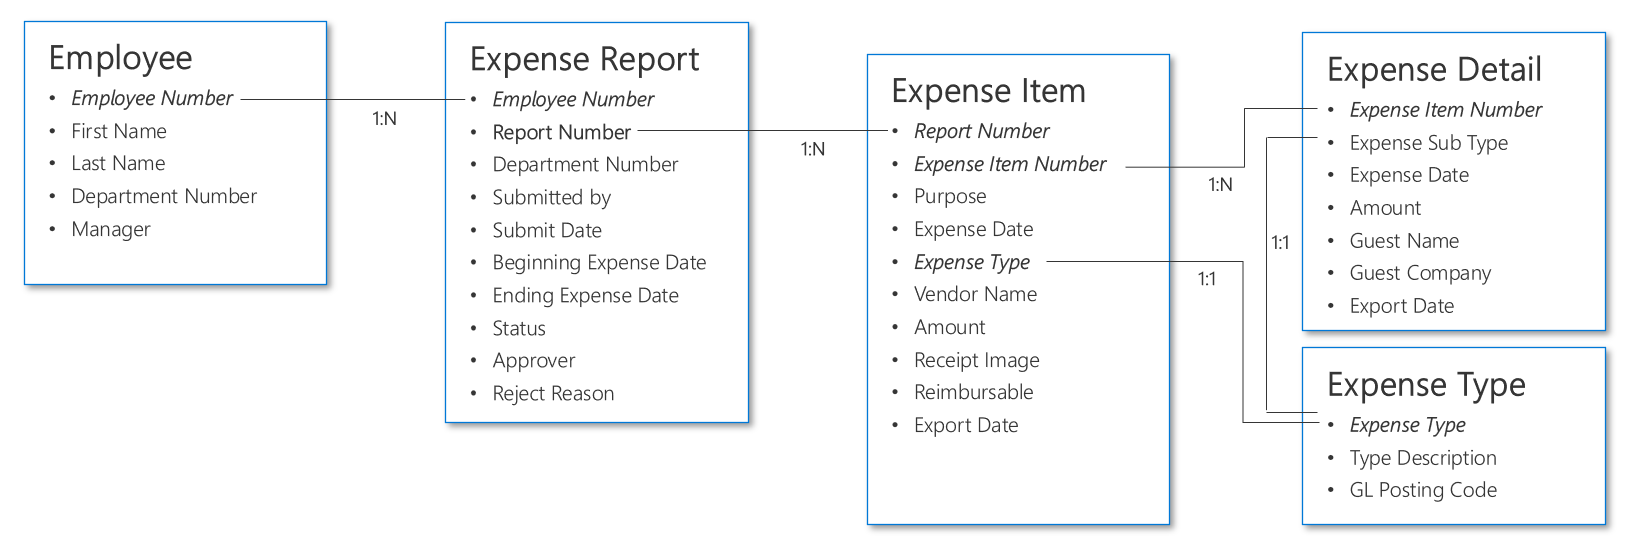 Приклад структури даних для звітування про витрати.